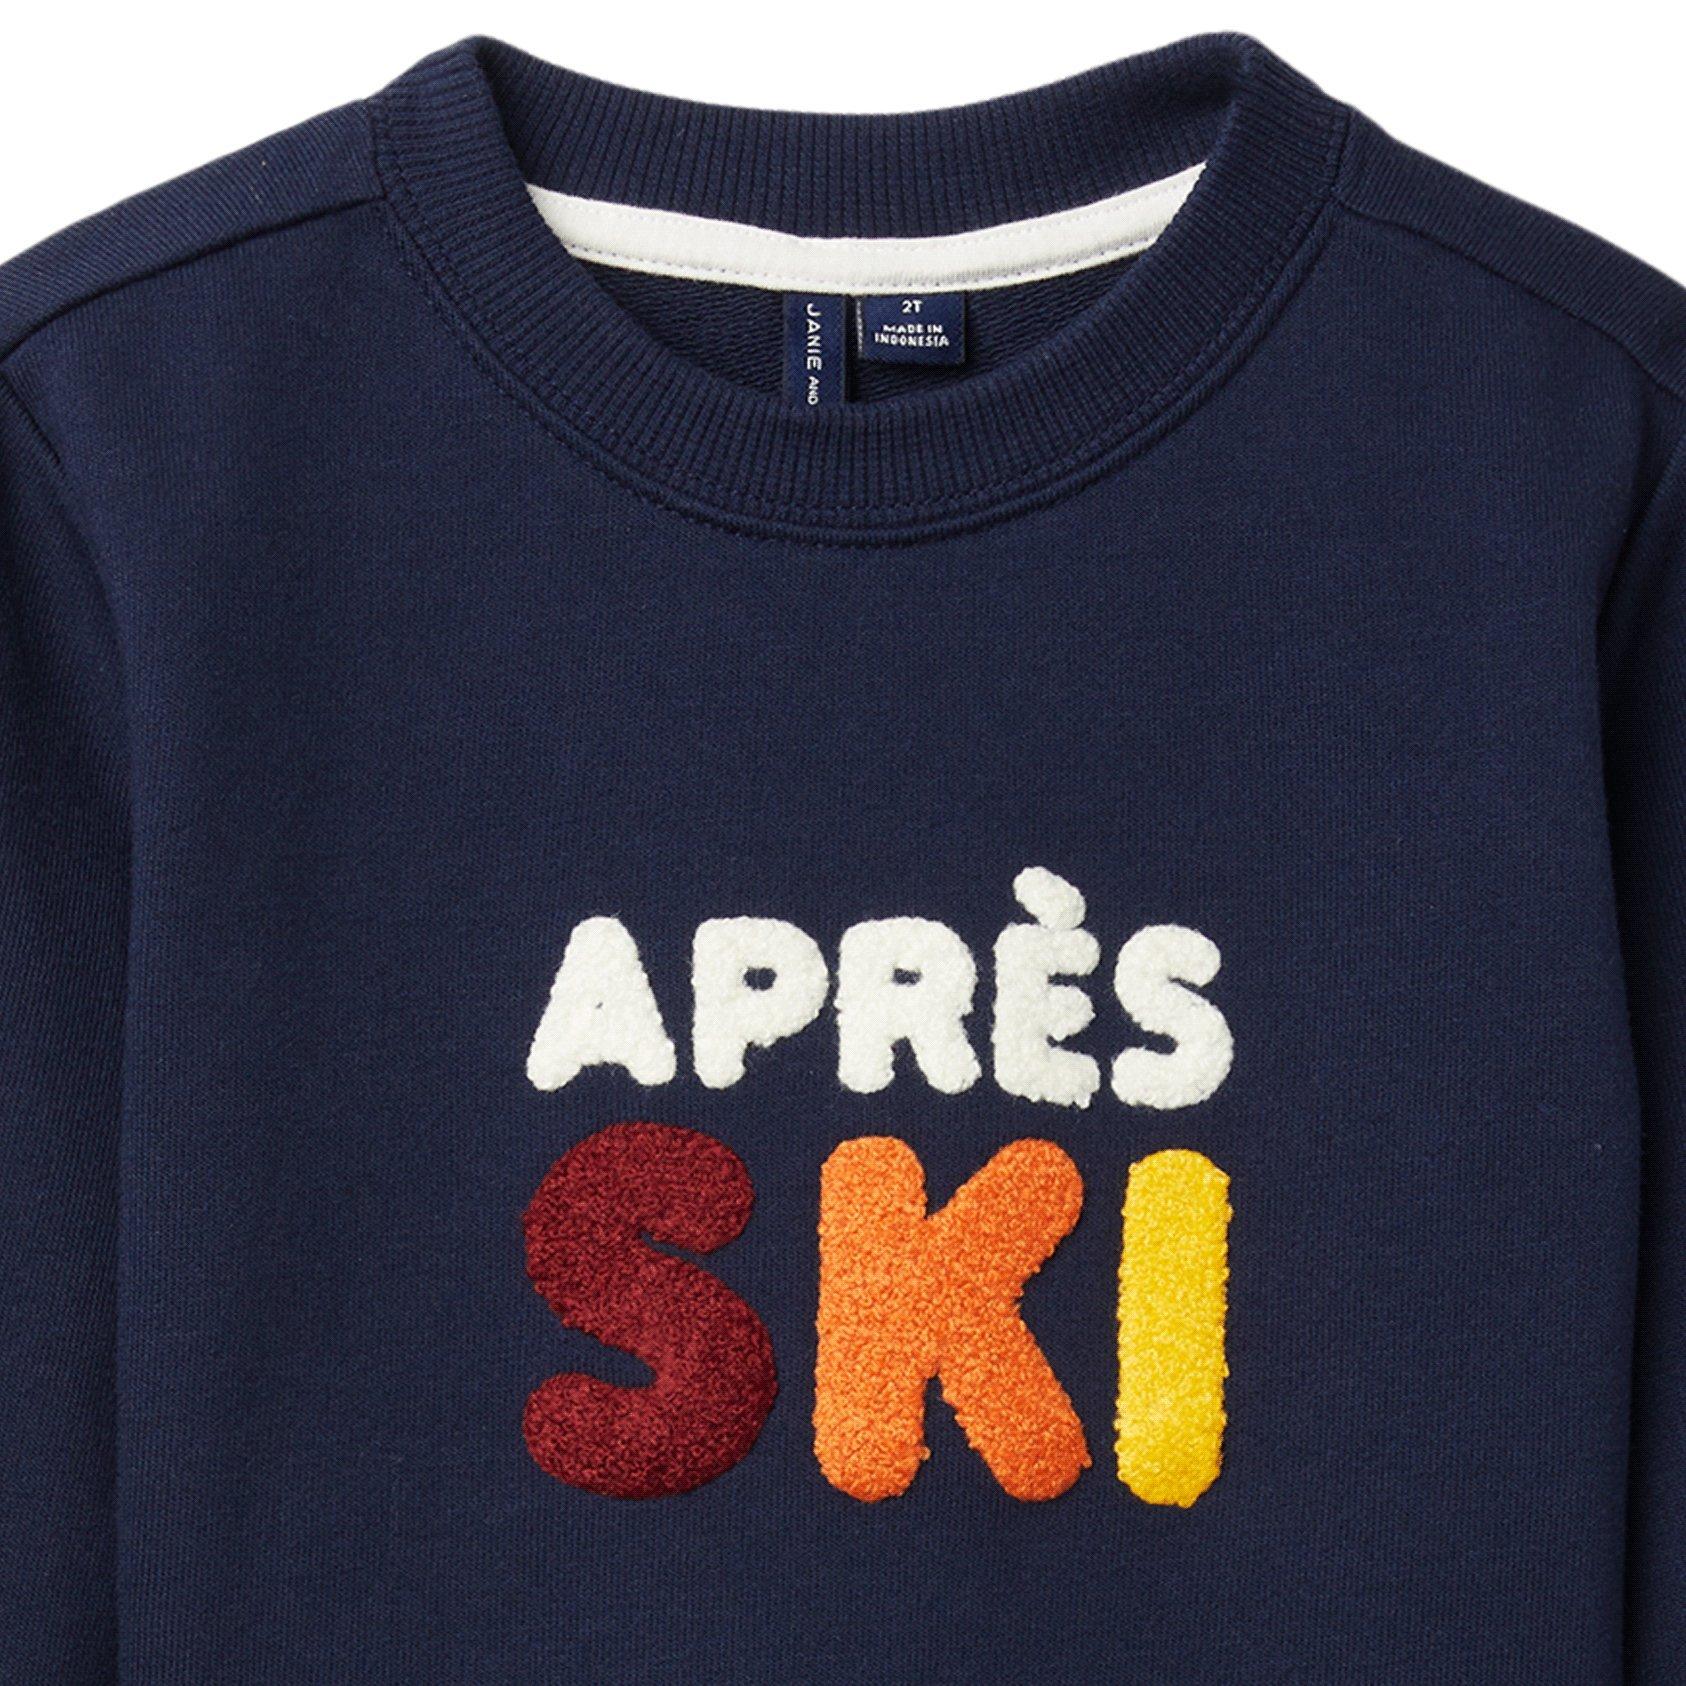 Apres Ski Sweatshirt image number 2